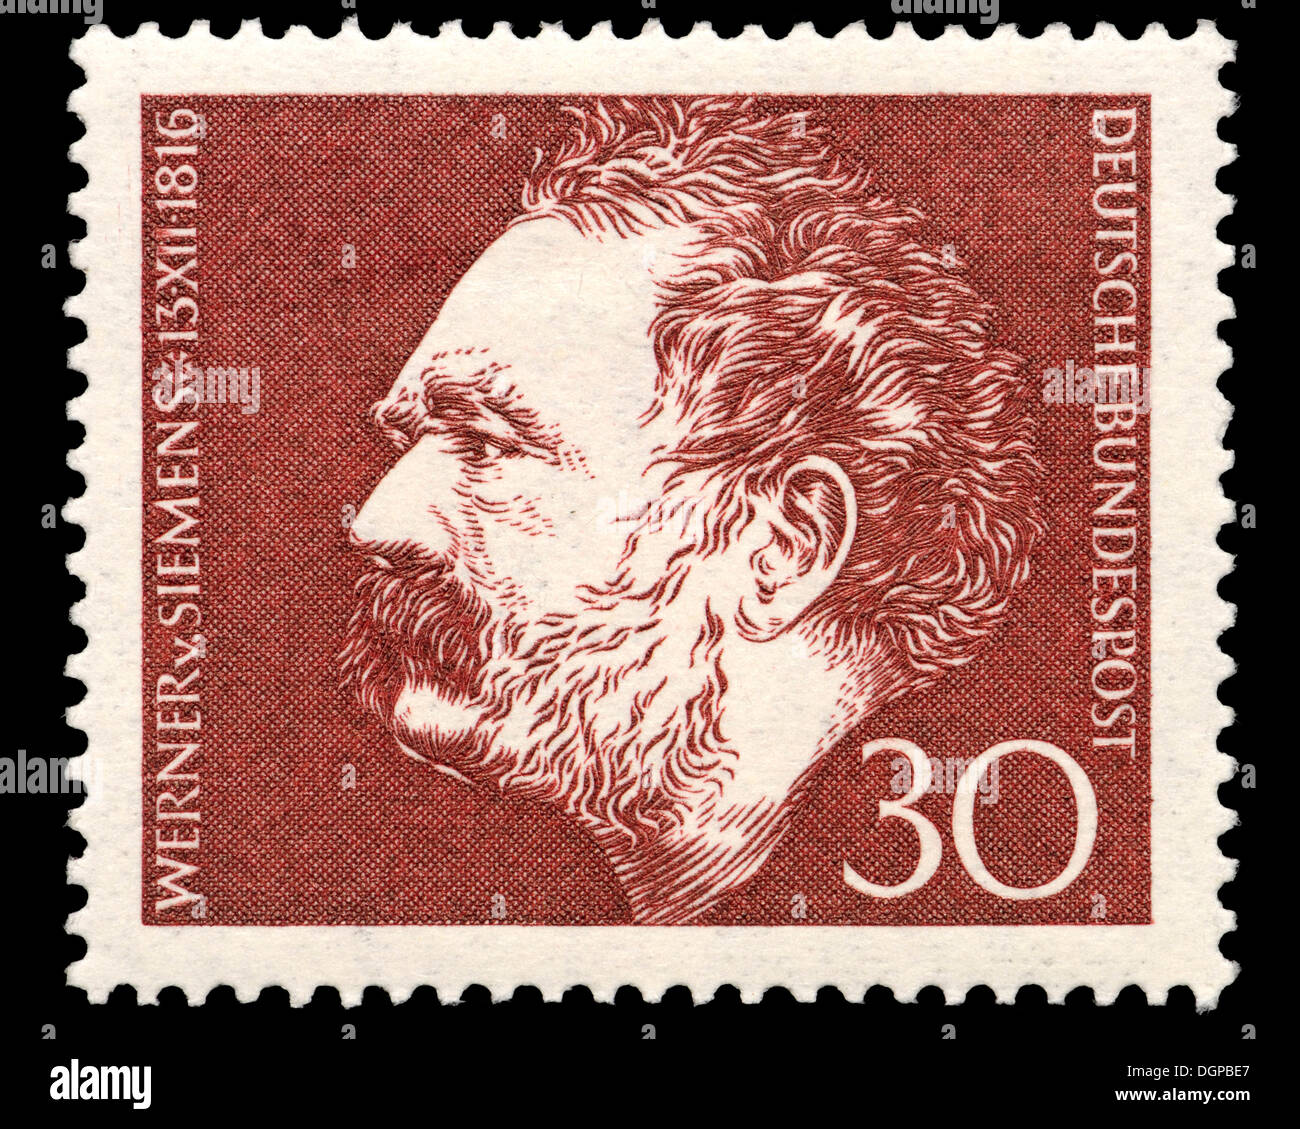 German postage stamp - Ernst Werner von Siemens (1816 – 1892) German inventor and industrialist Stock Photo